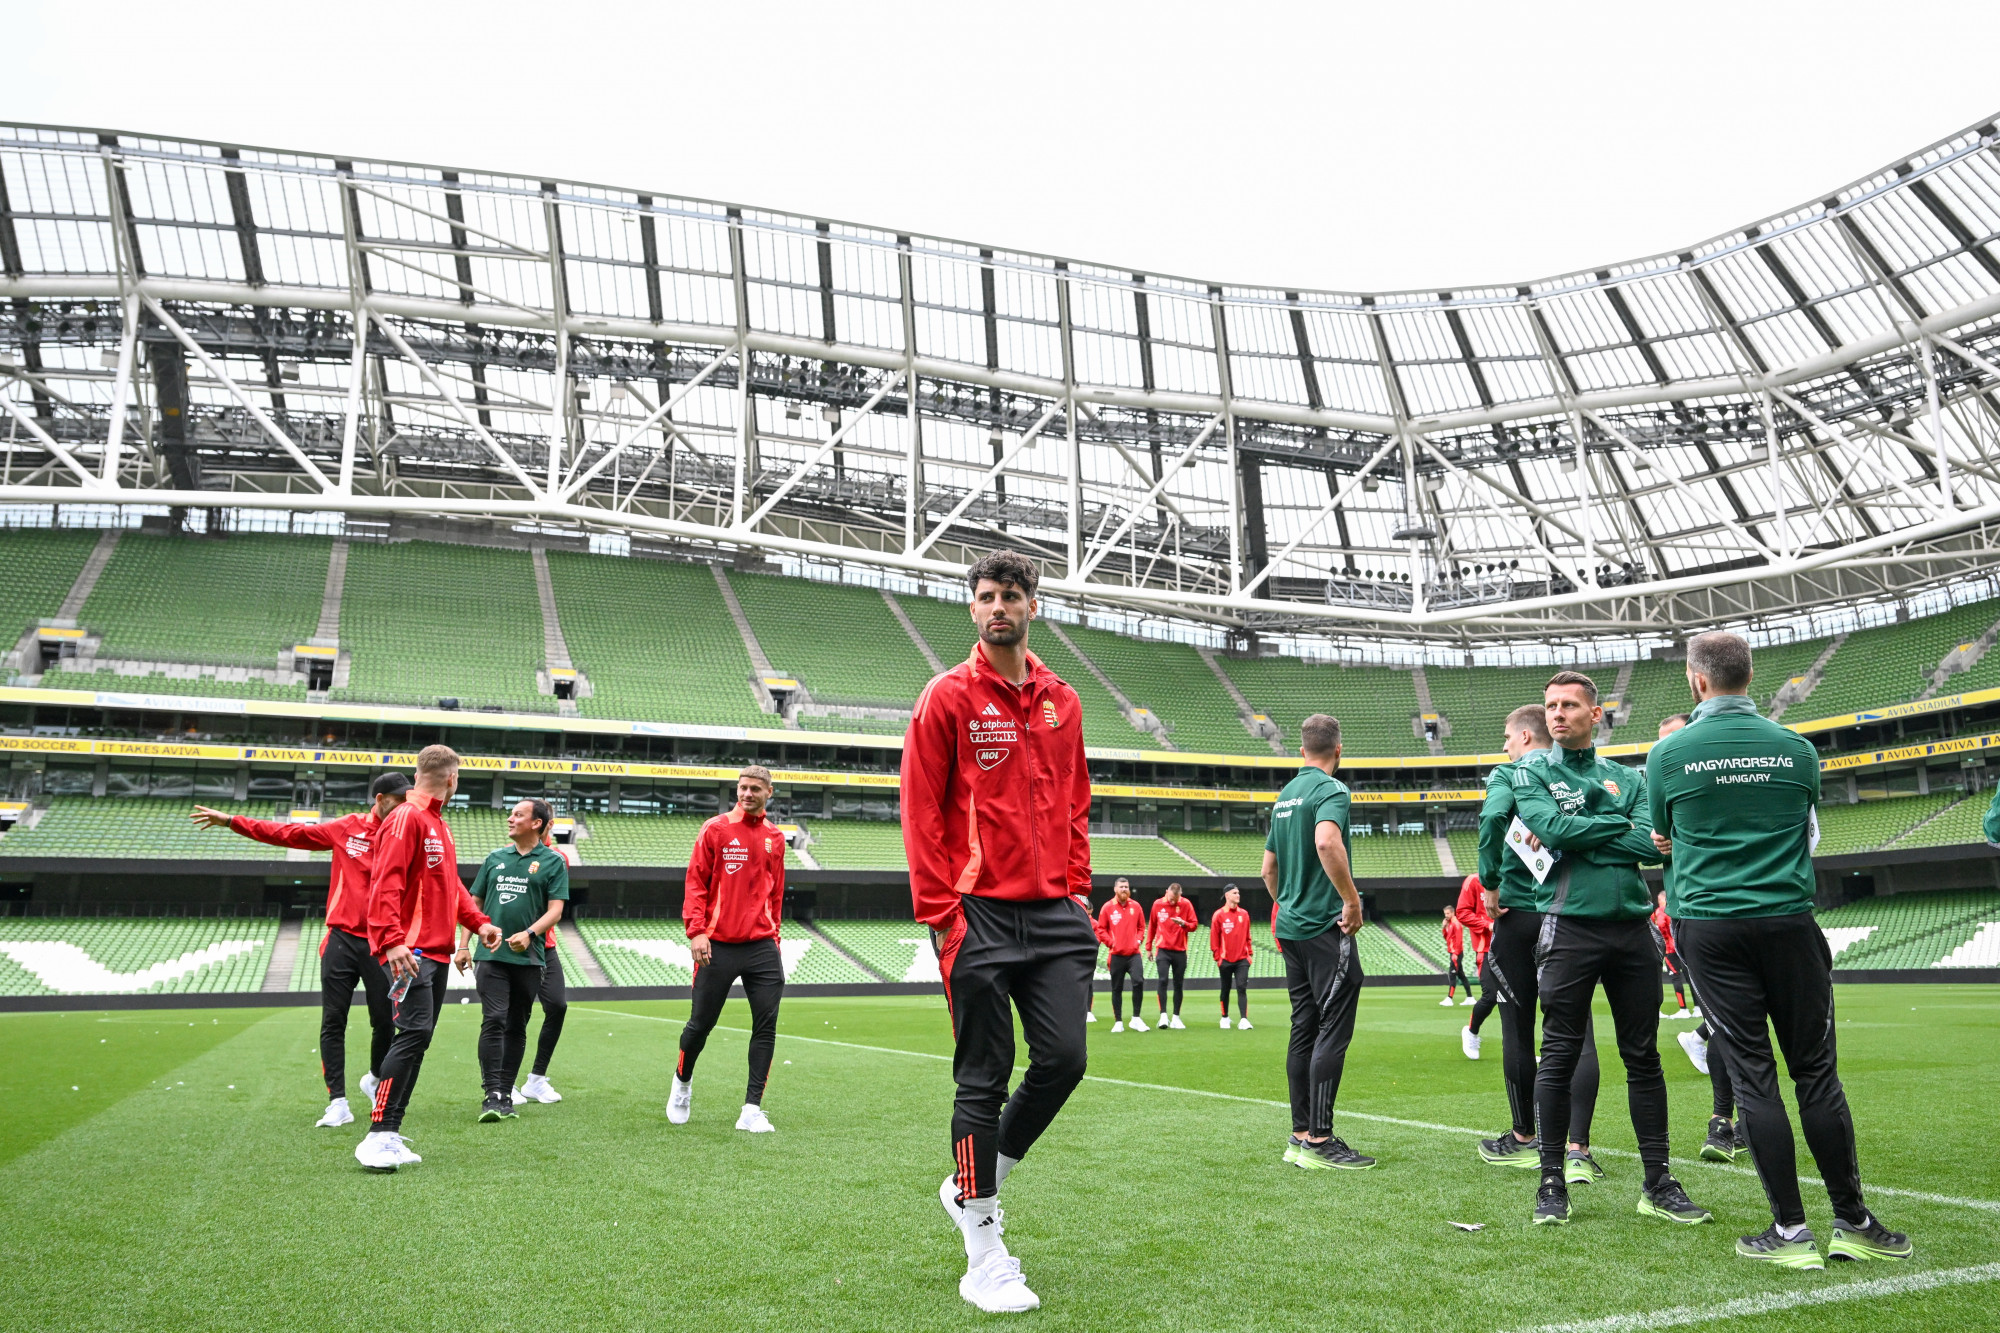 Mindent a focidrukkerekért: négy magyar konzul is lesz Dublinban a magyar-ír meccs miatt